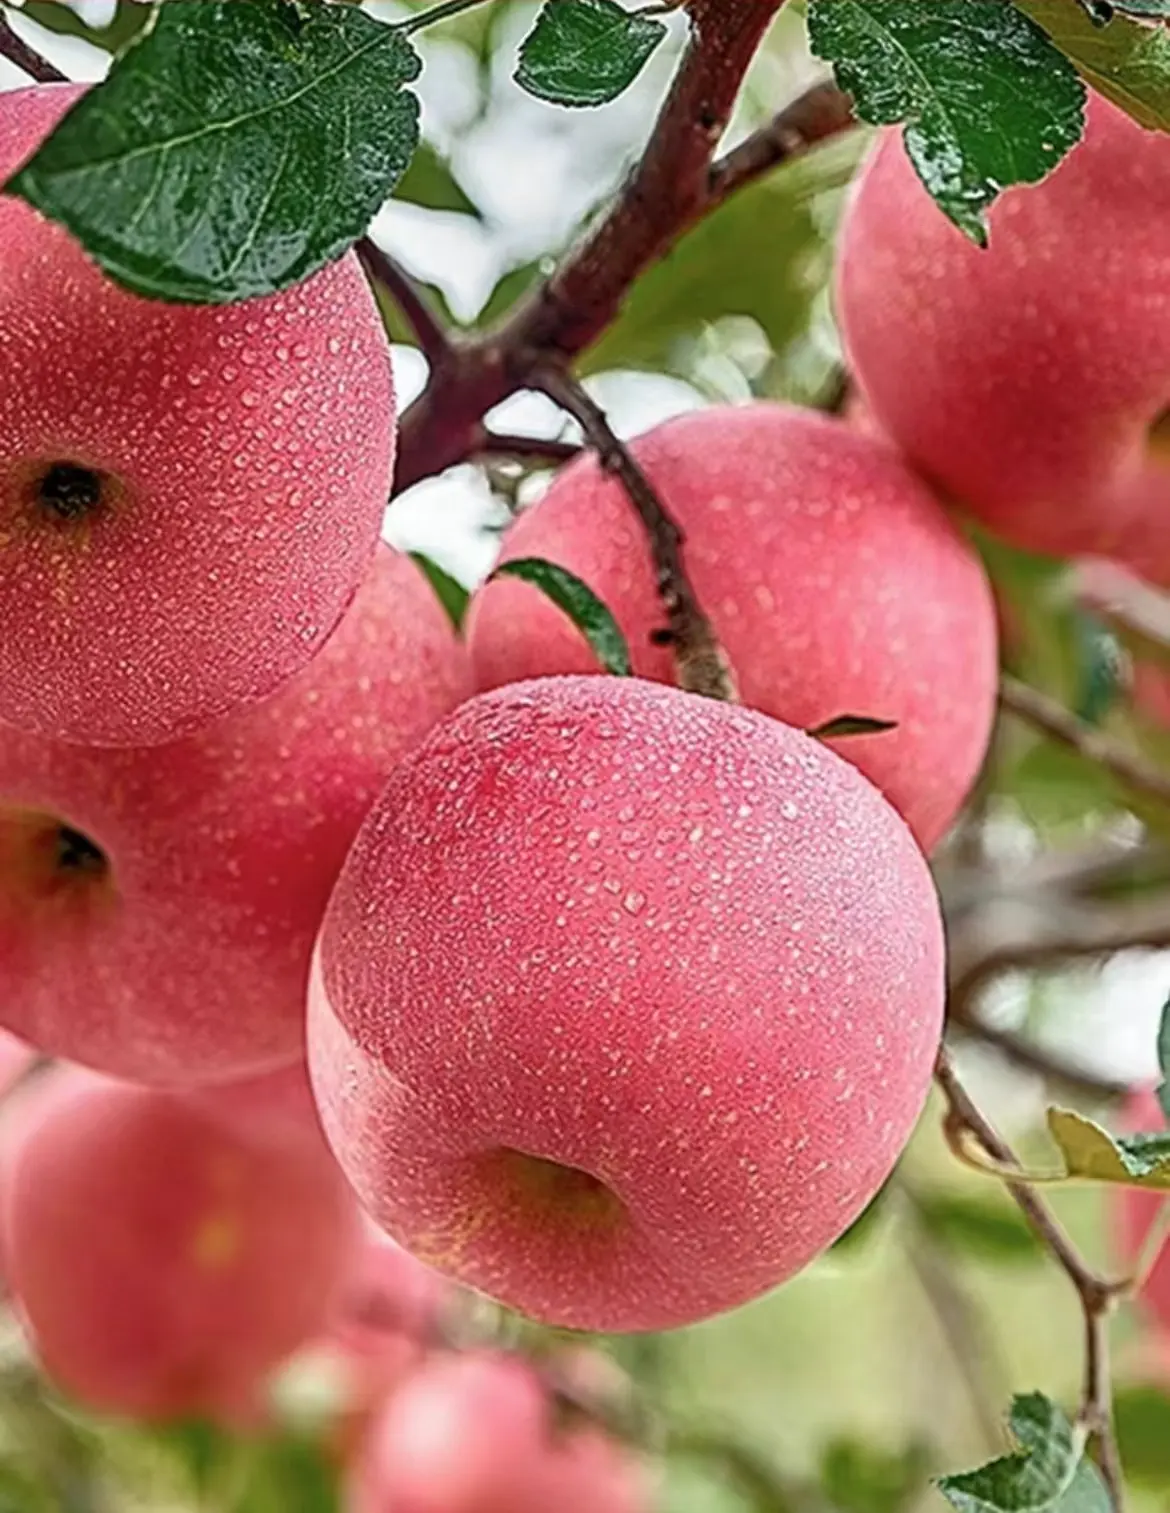 Obral Cina kualitas ekspor apel segar tanaman baru buah apel merah alami Fuji